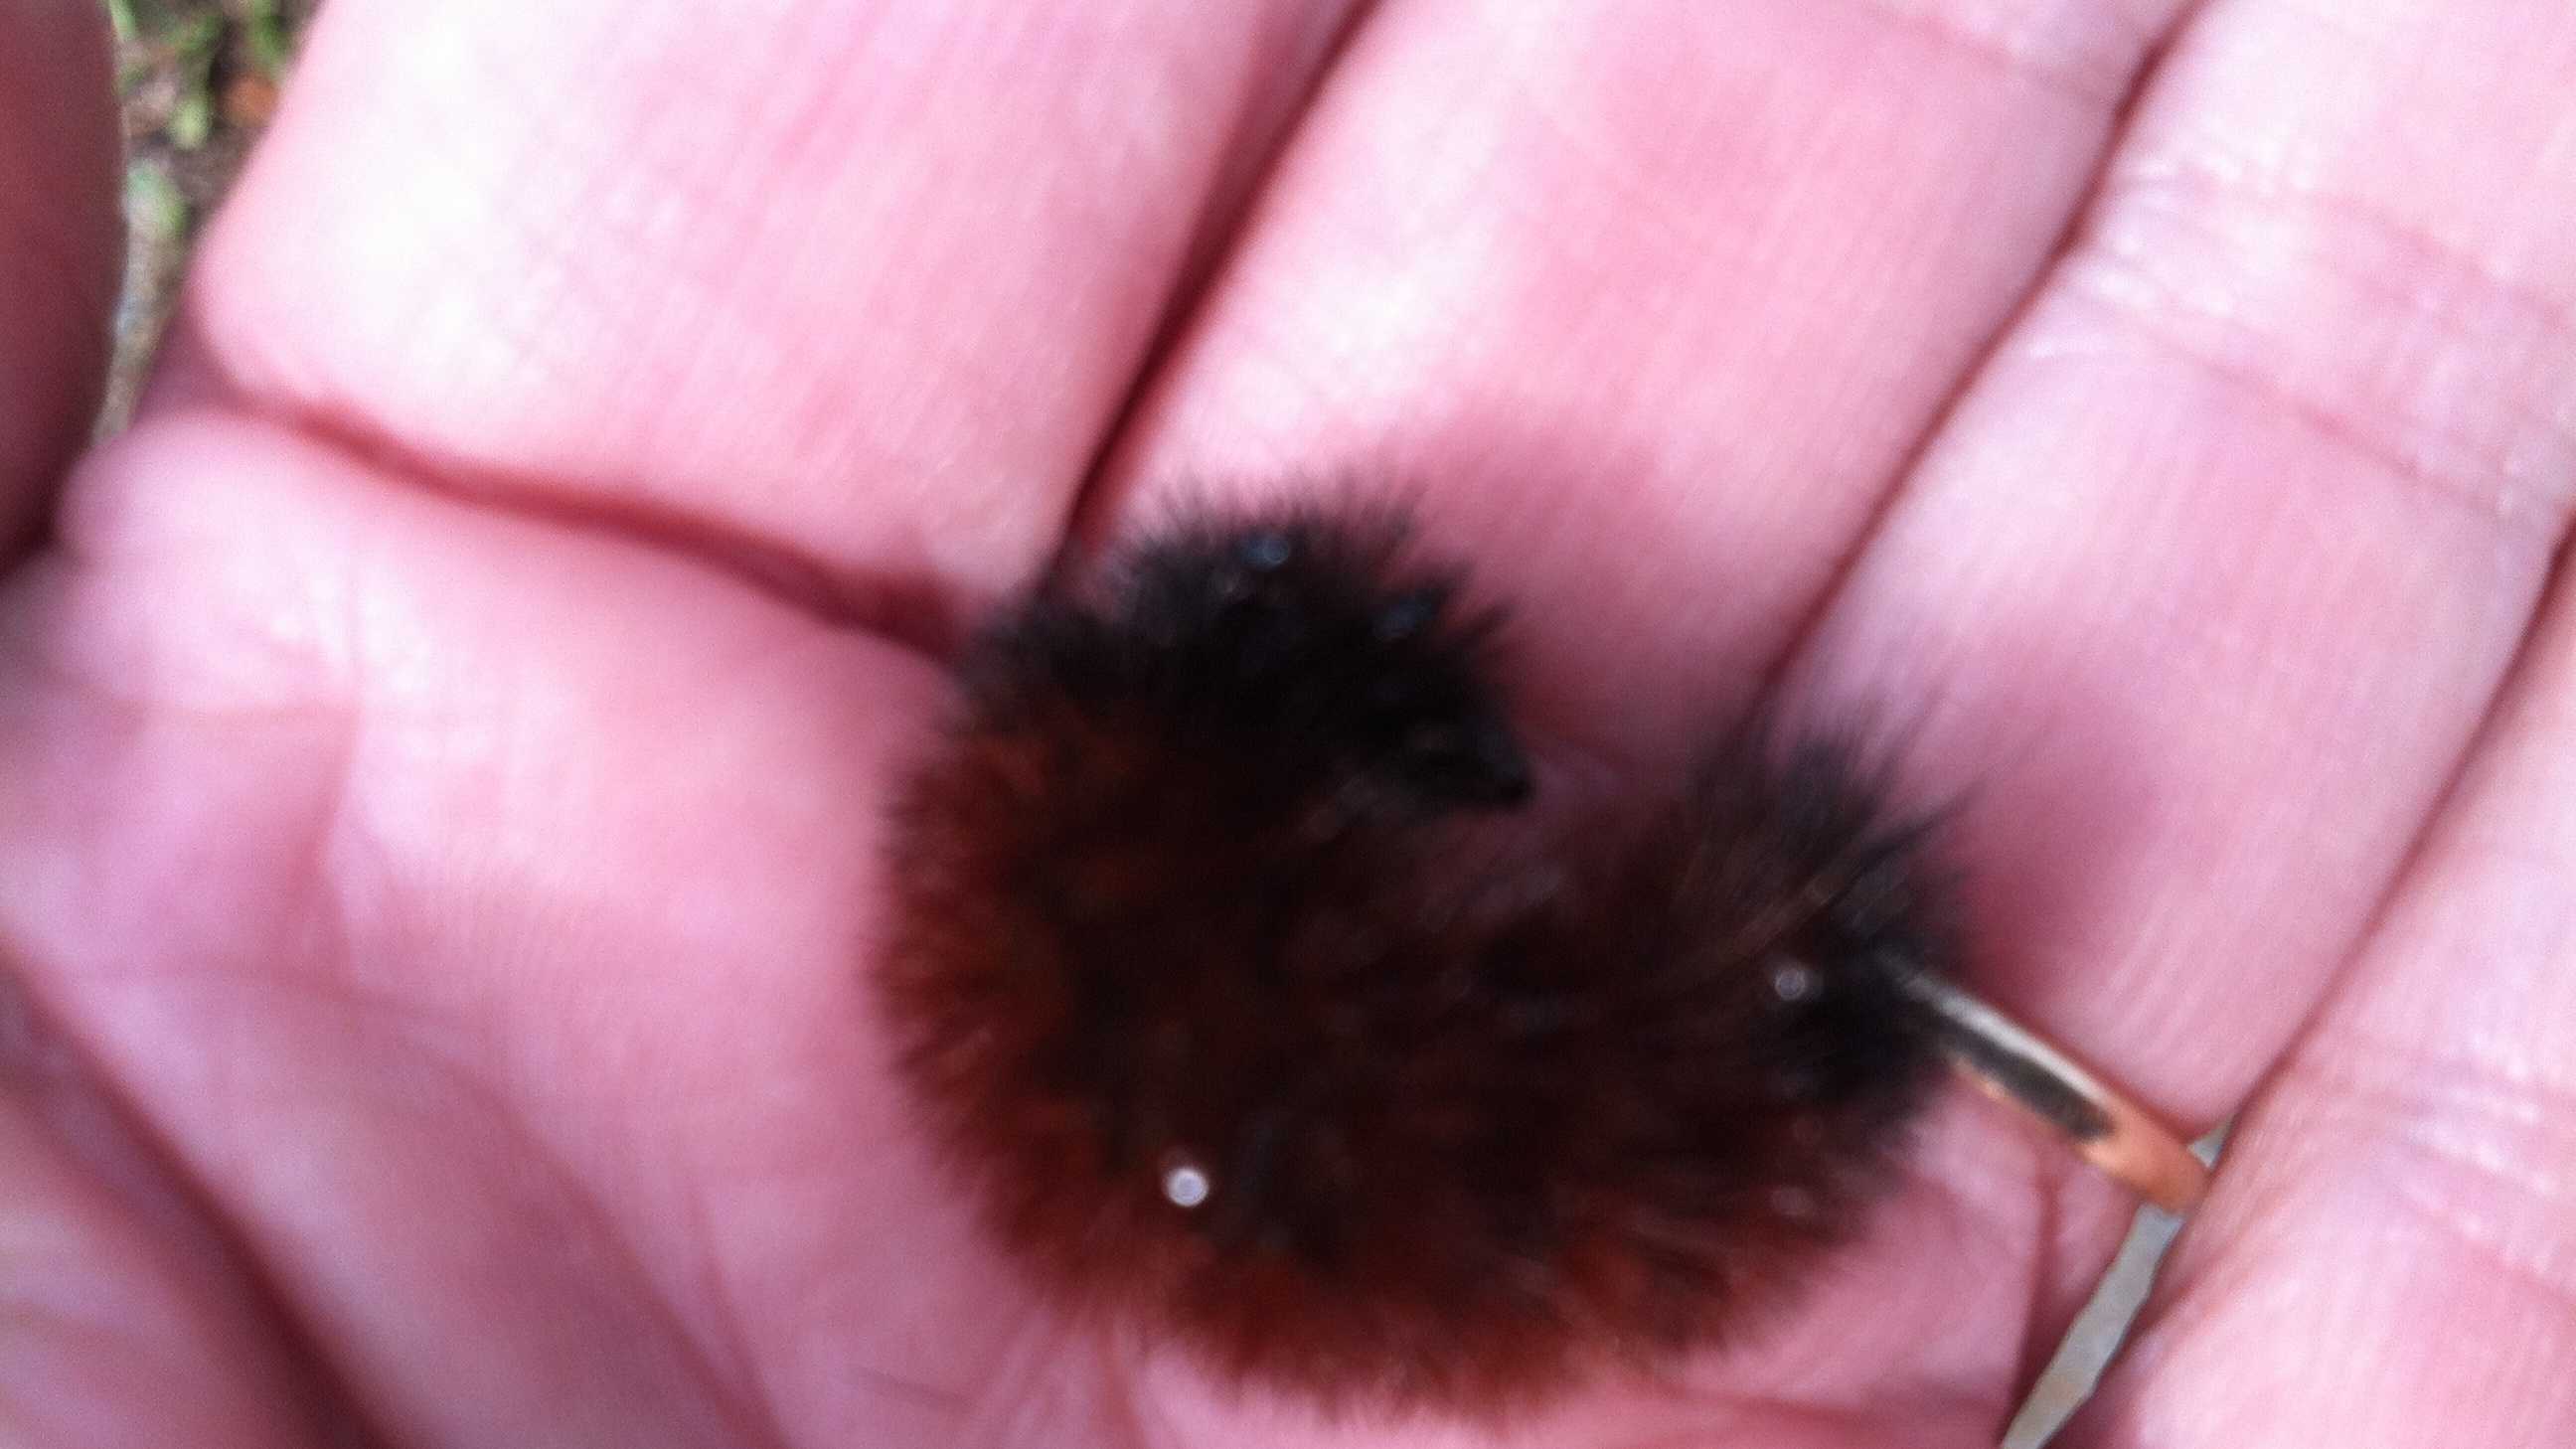 wooly bear caterpillar frozen